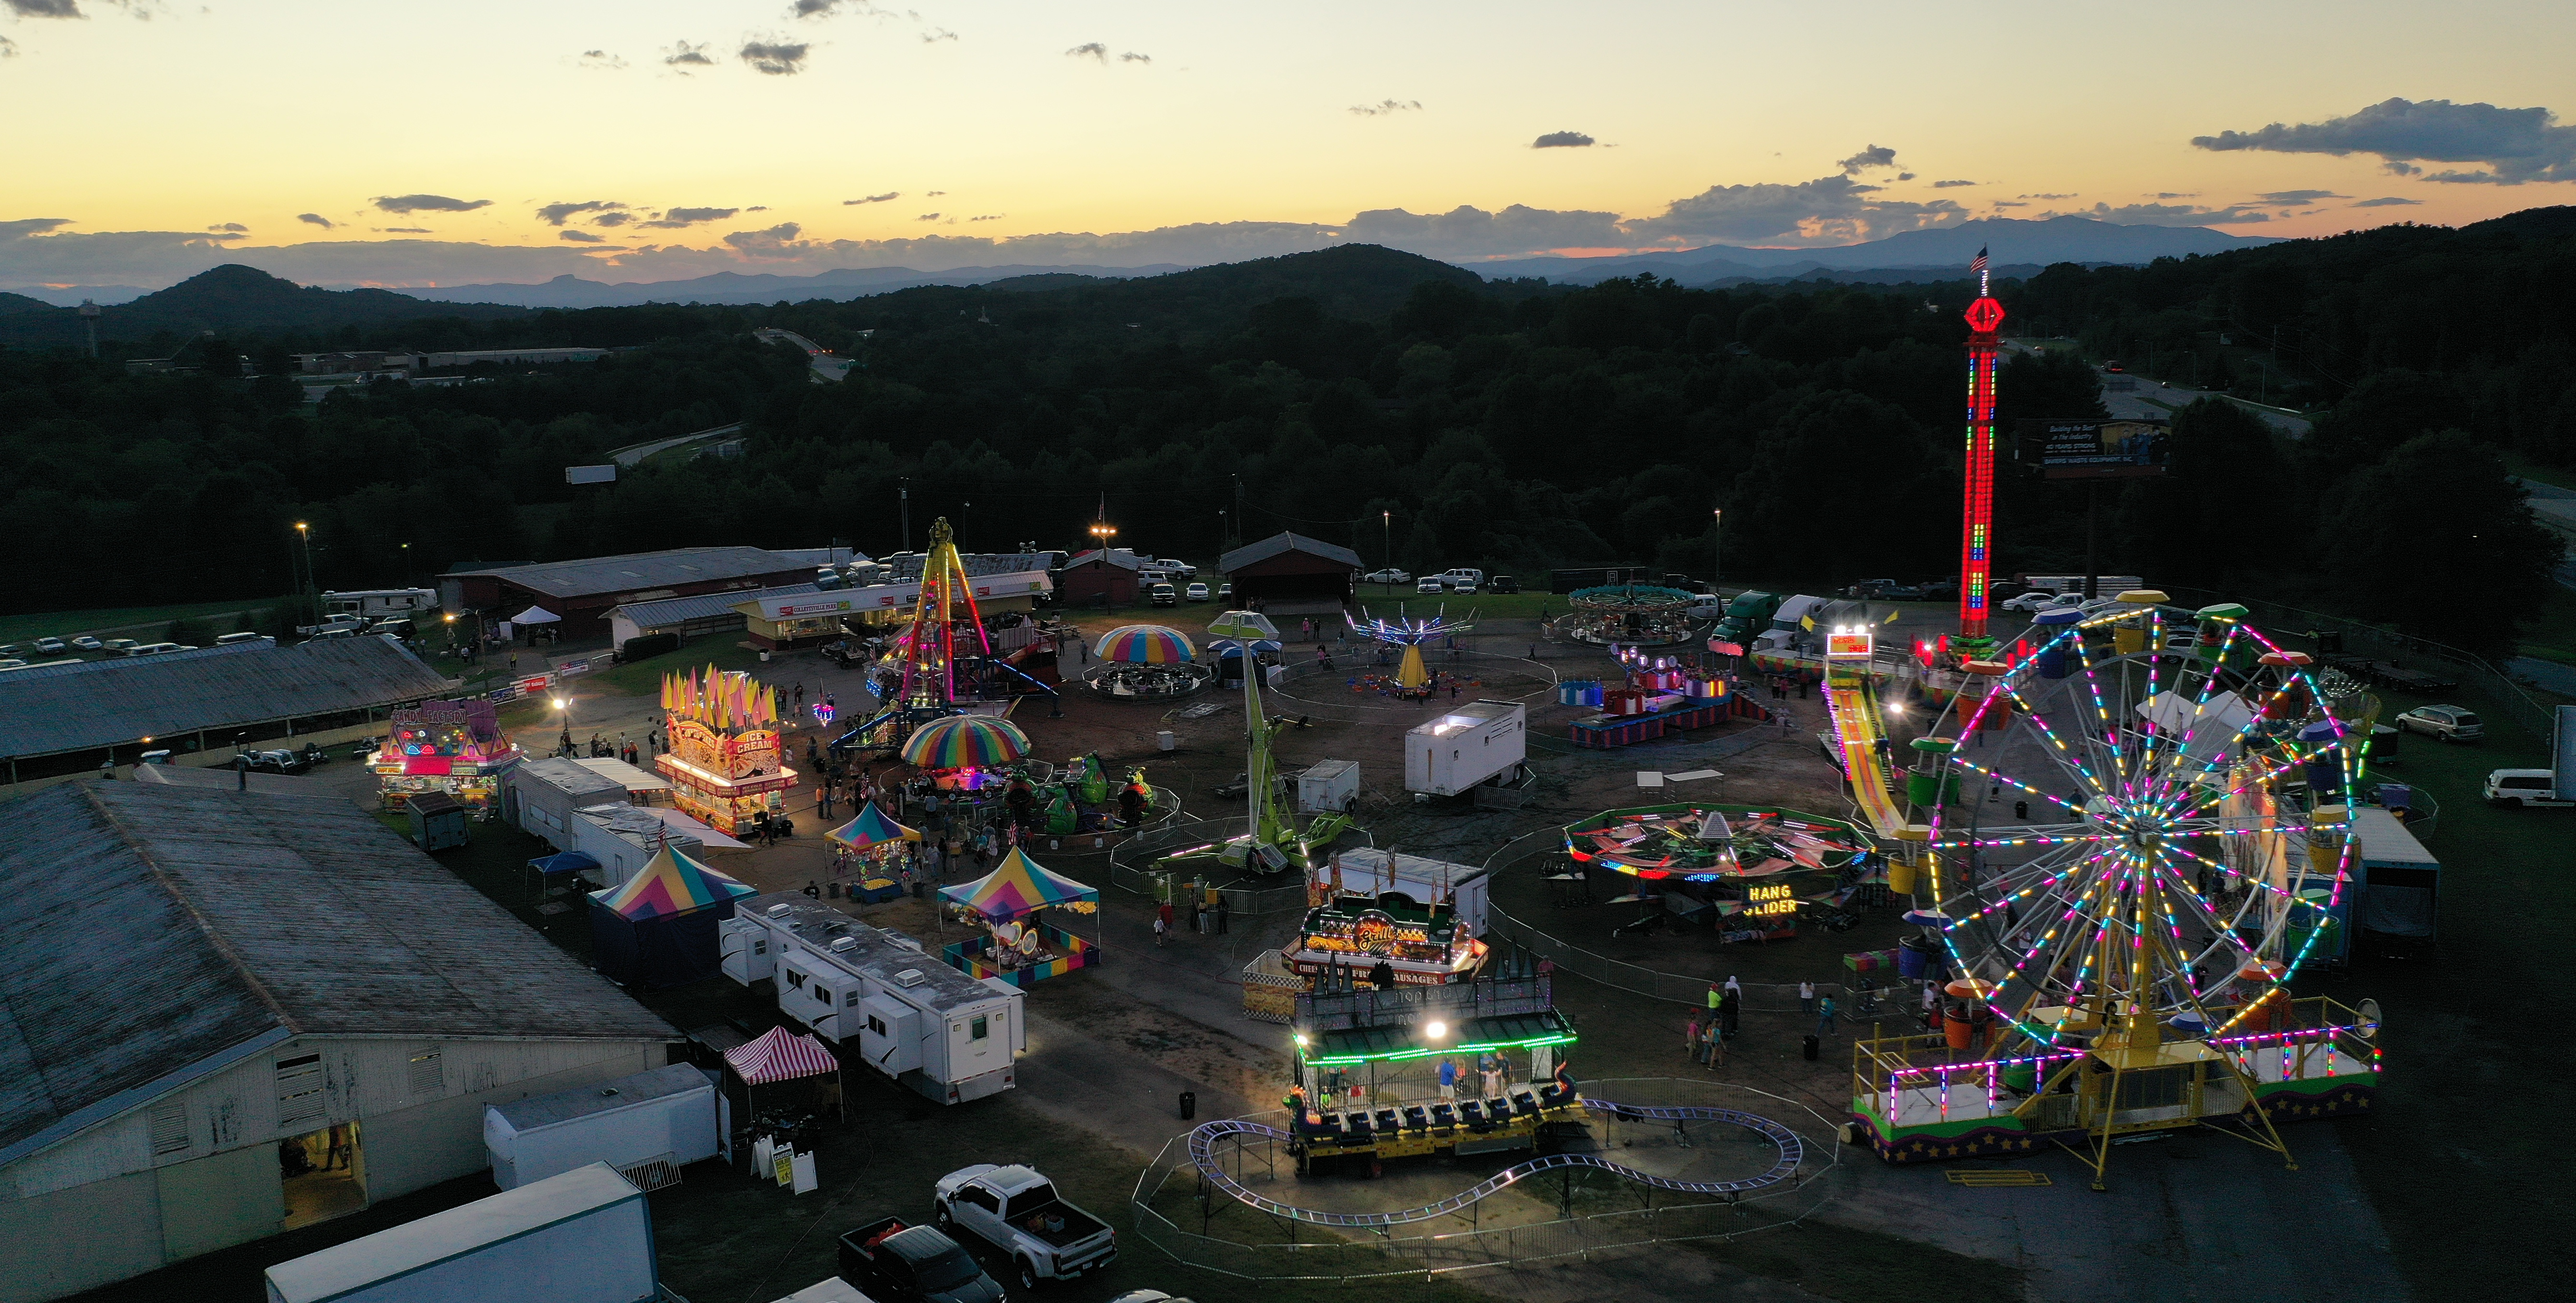 Caldwell Agriculture Fair 2021 aerial view